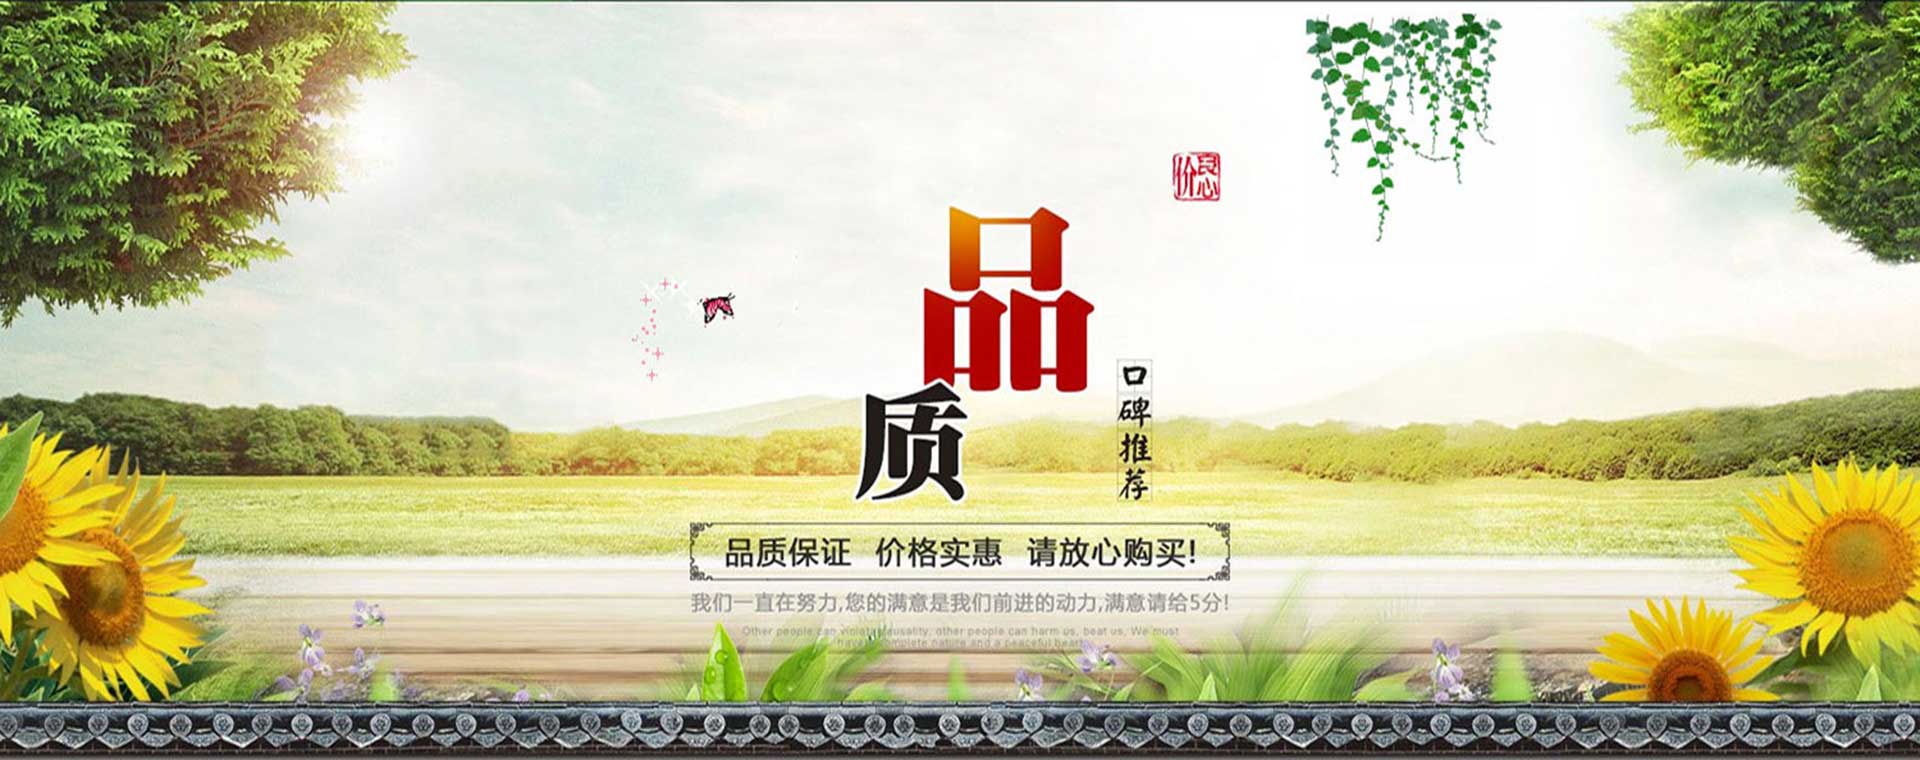 安徽博威农业科技有限公司banner